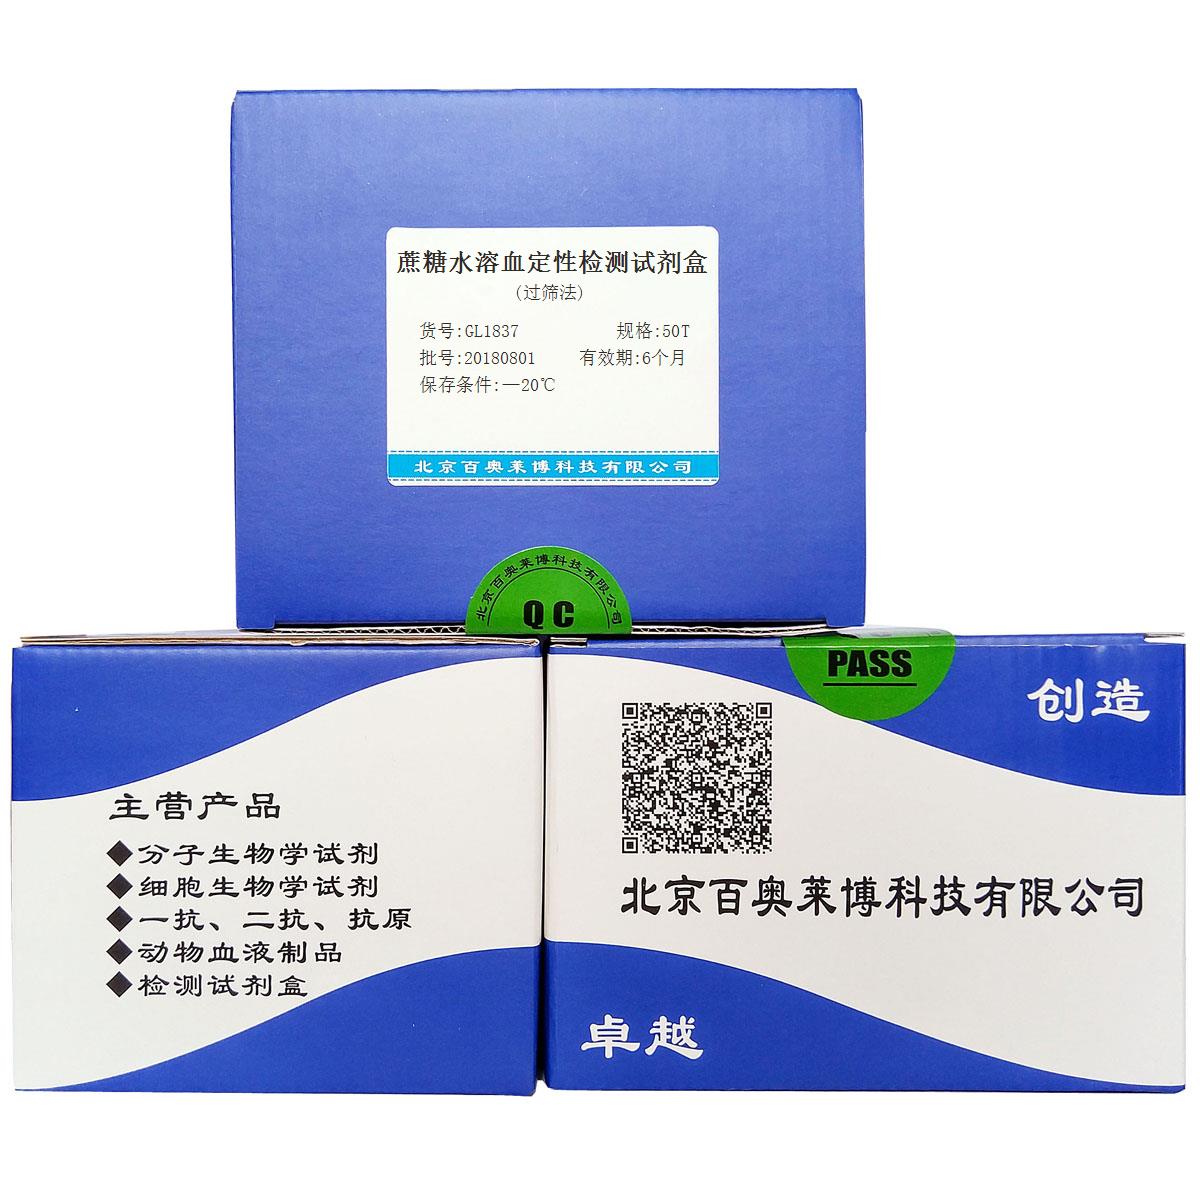 蔗糖水溶血定性检测试剂盒(过筛法)